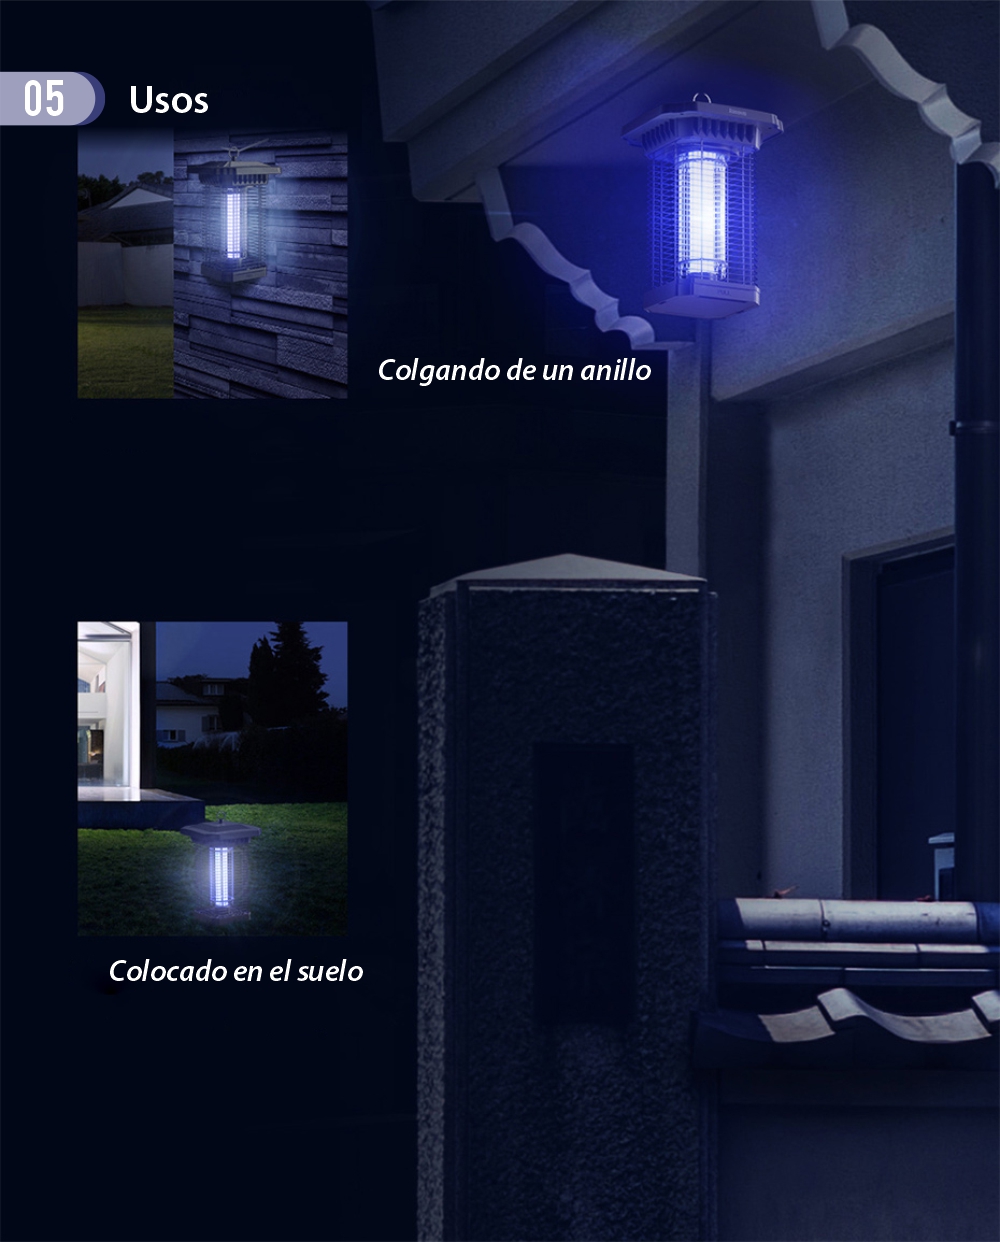 Lámpara UV / Dispositivo anti-mosquitos Baseus, 18 W, Silencioso, Resistente al agua, Longitud de onda 365 nm